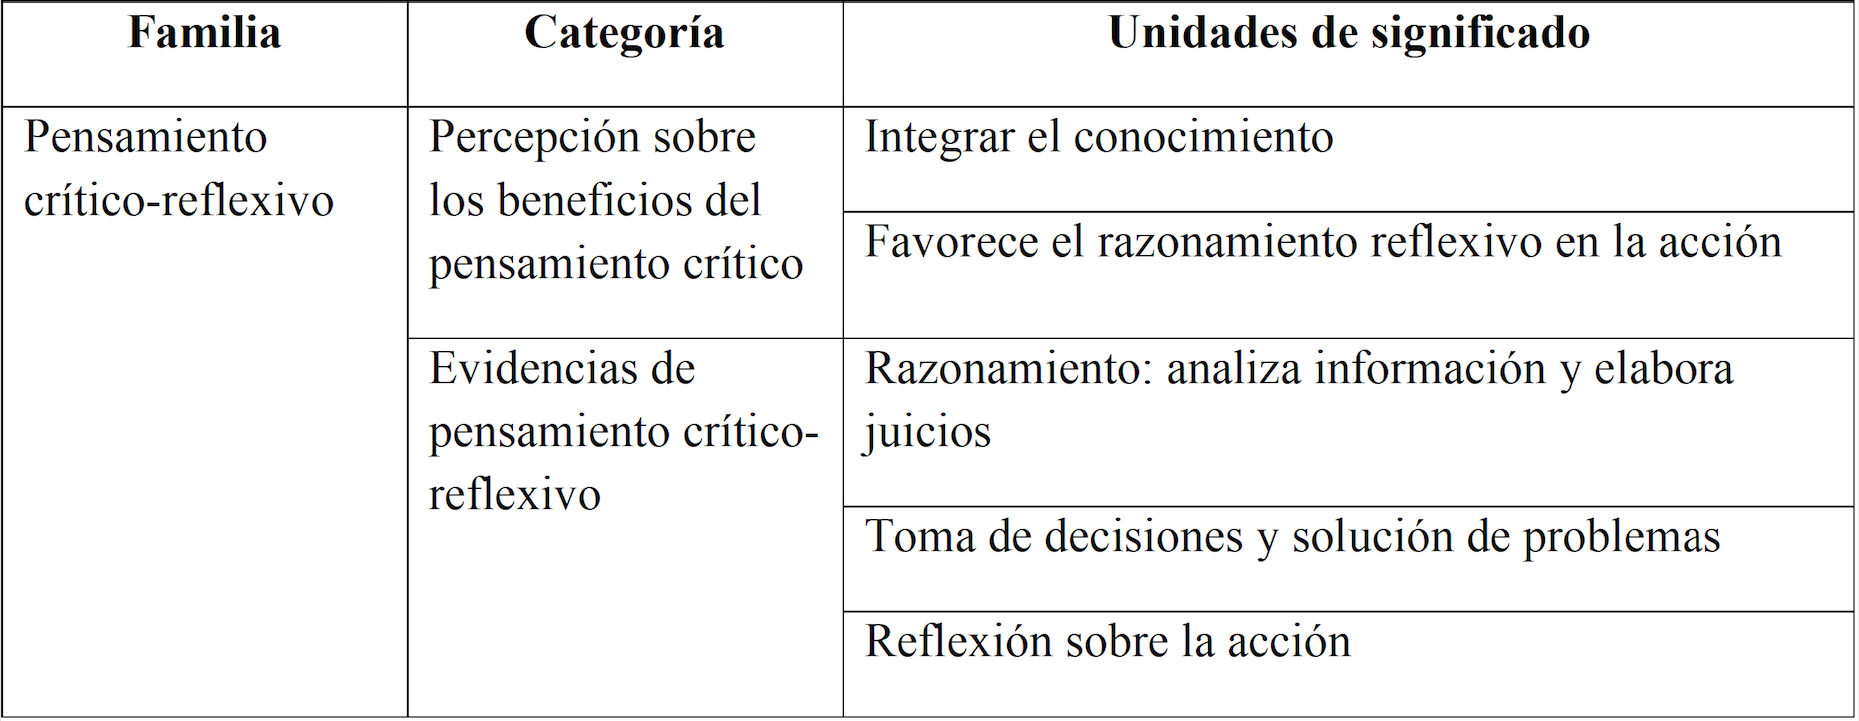 
Matriz final de categoría y unidades de significado de la familia
“pensamiento crítico-reflexivo”
